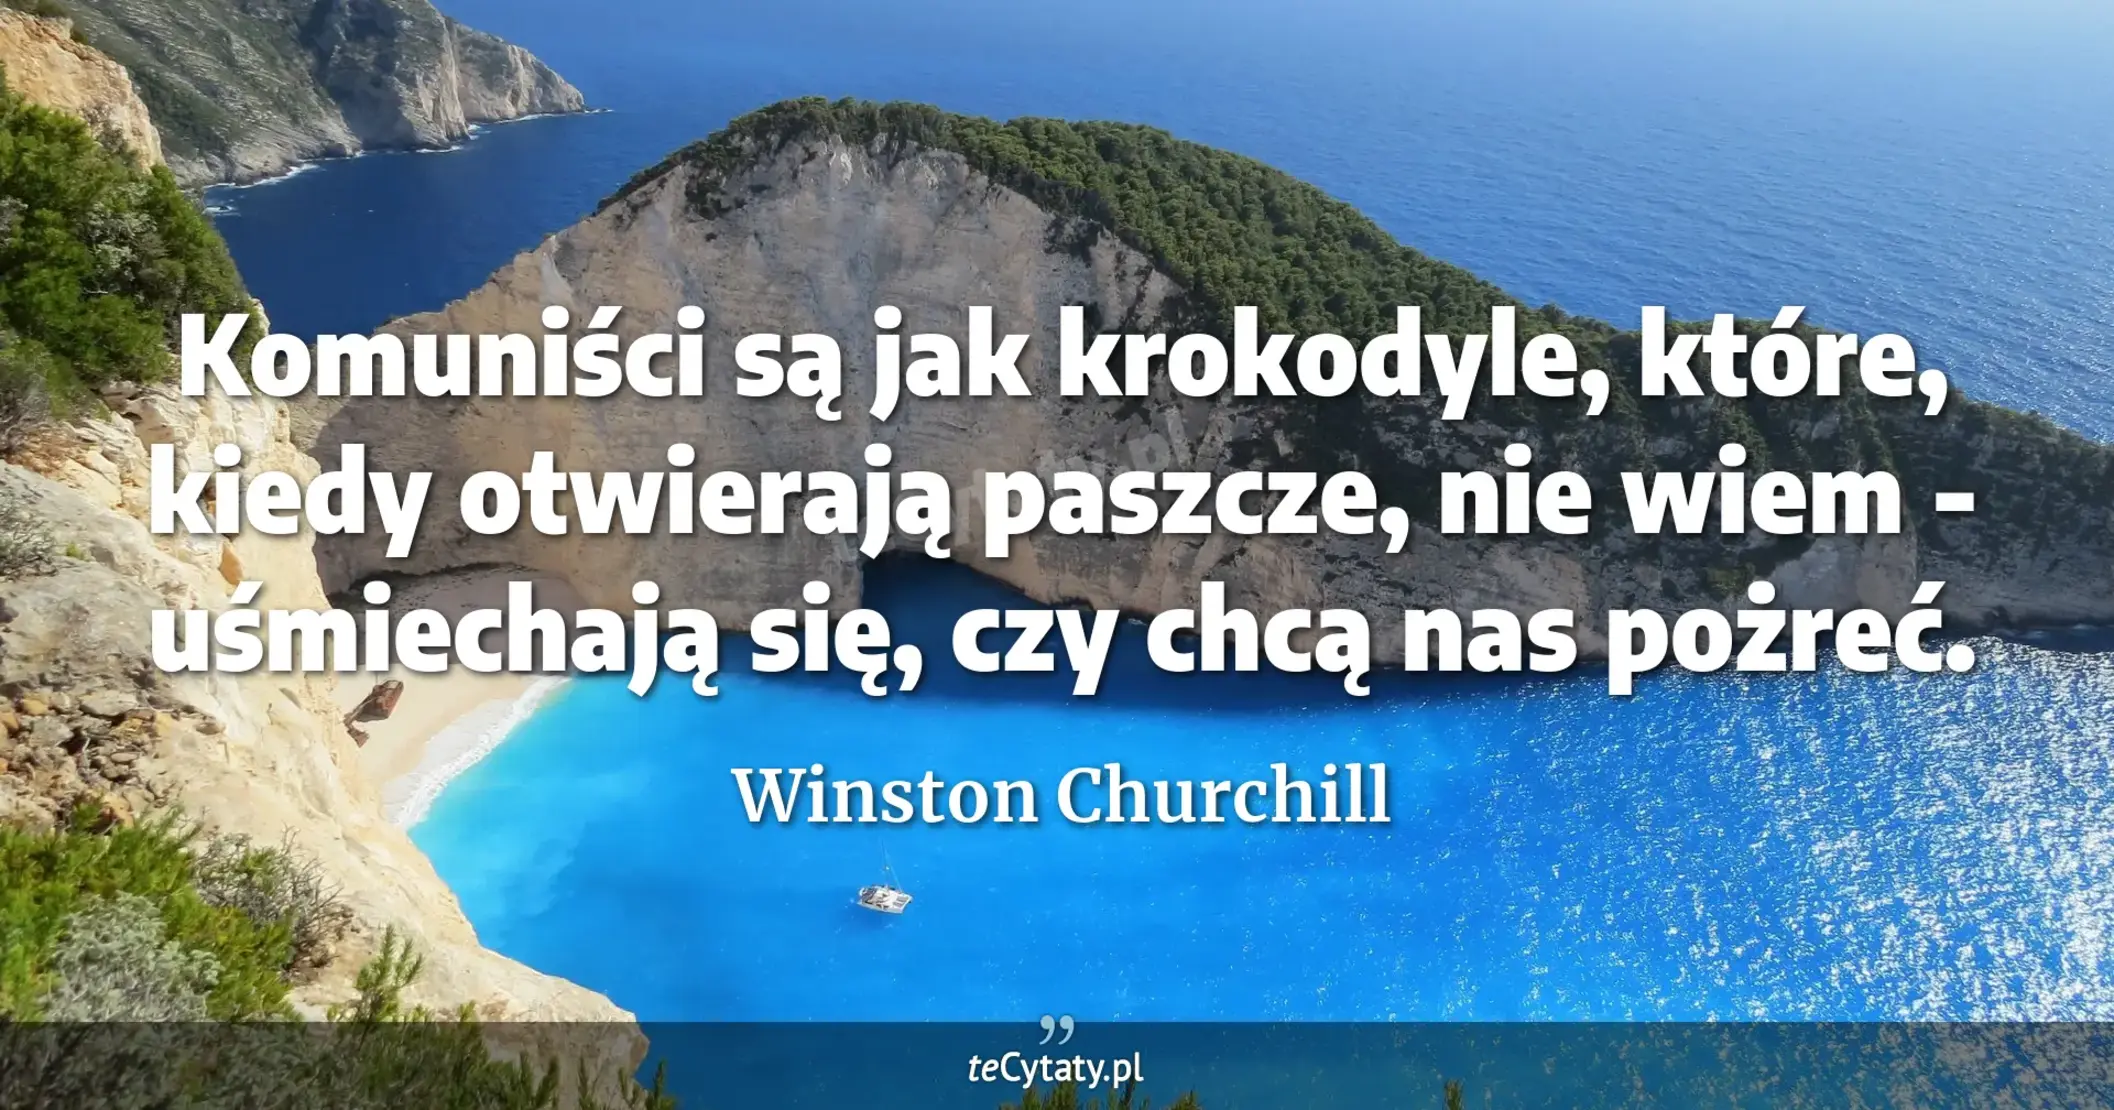 Komuniści są jak krokodyle, które, kiedy otwierają paszcze, nie wiem - uśmiechają się, czy chcą nas pożreć. - Winston Churchill